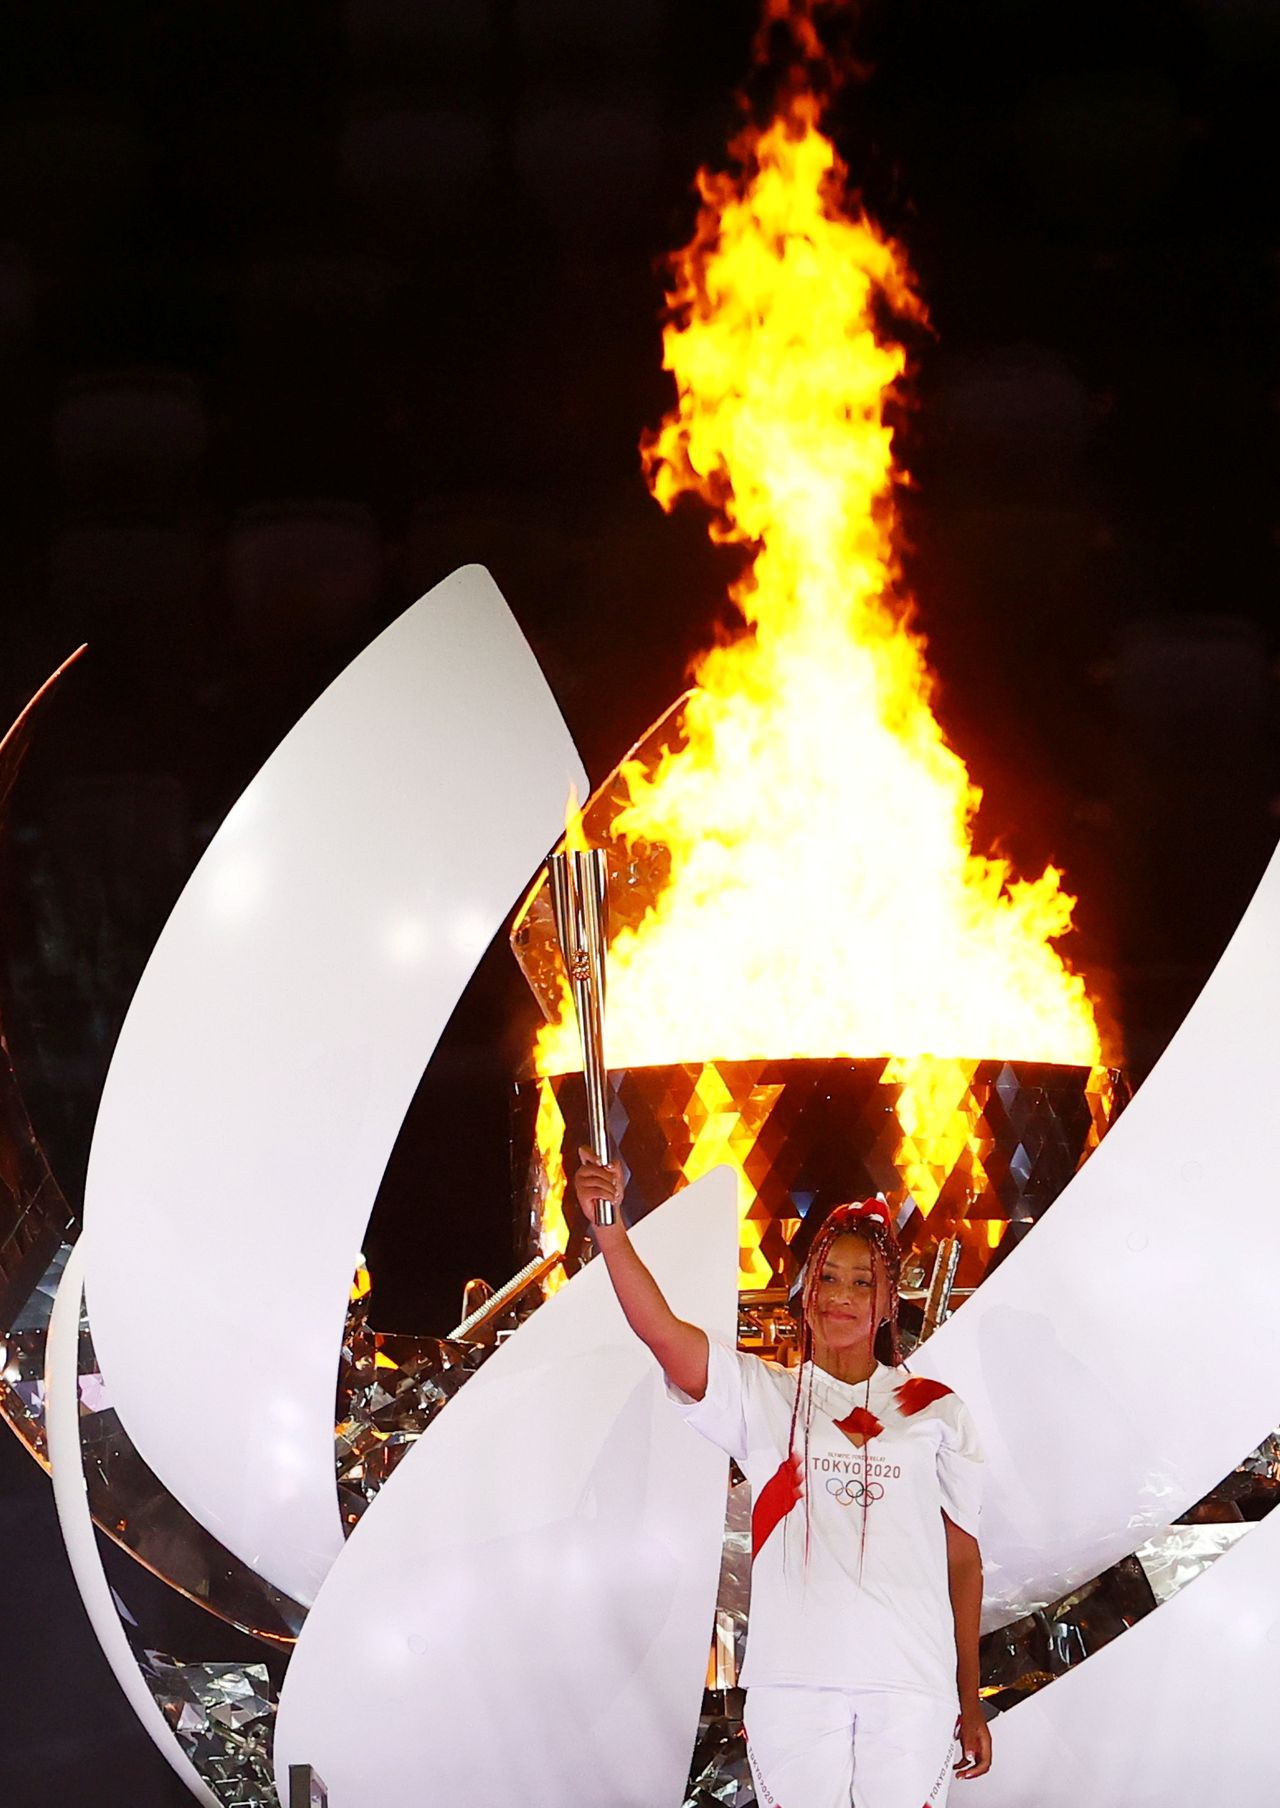 لاعبة التنس اليابانية نعومي أوساكا تحمل الشعلة الأولمبية بعد أن أوقدت المرجل الأولمبي خلال حفل افتتاح أولمبياد طوكيو 2020 يوم الجمعة. تصوير: ستيفان ورموث - رويترز.